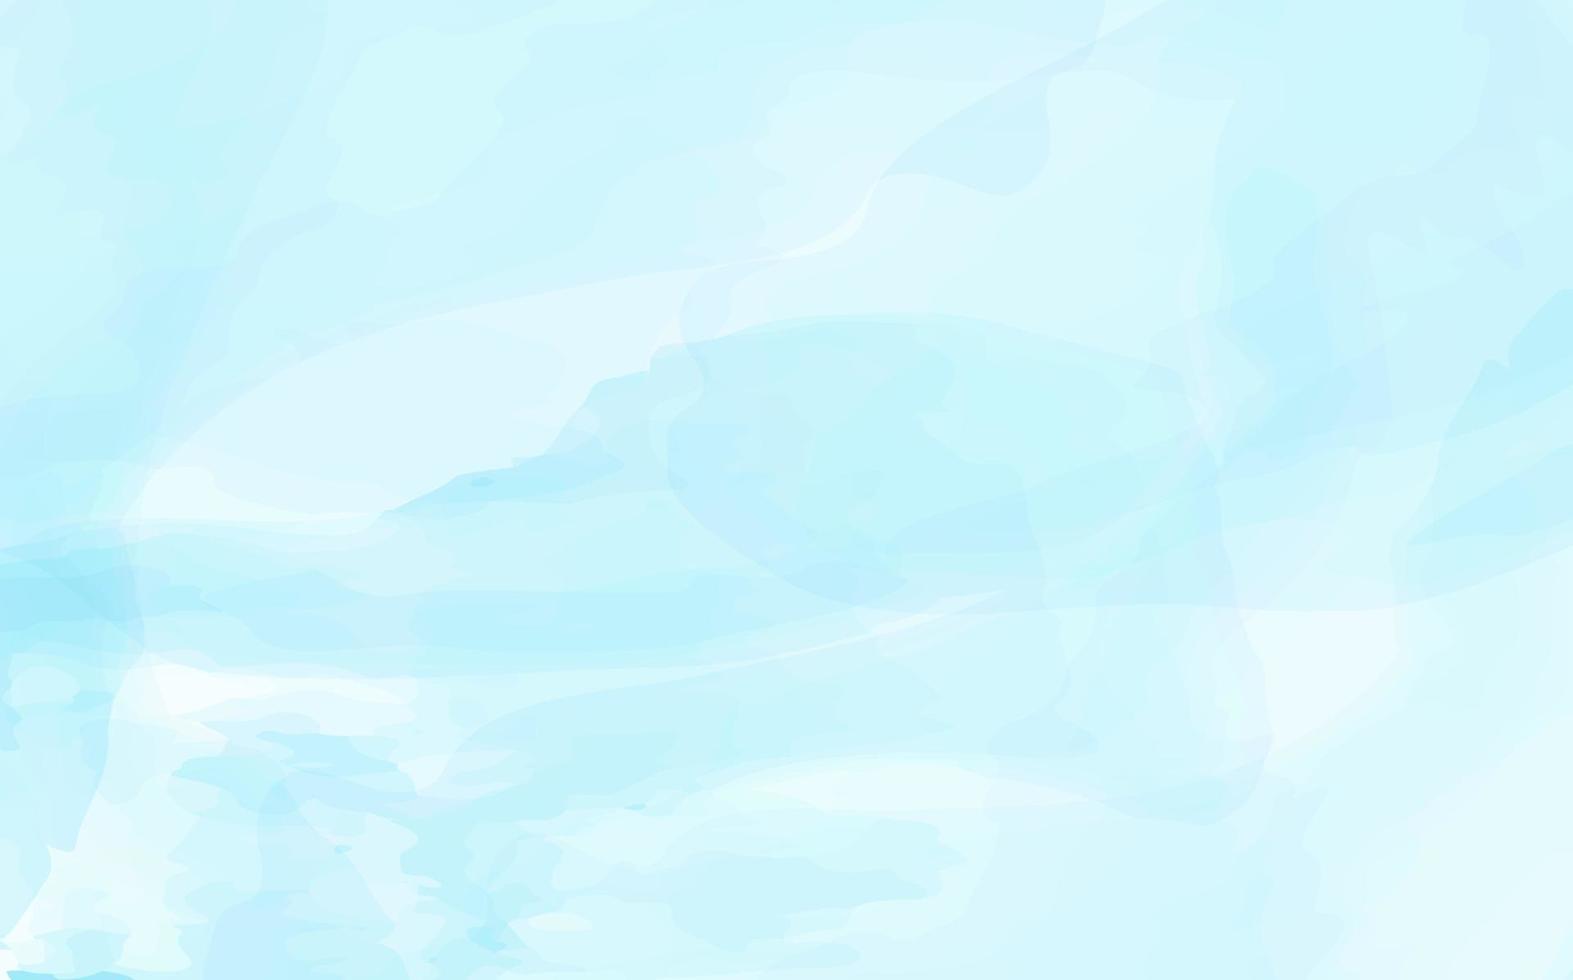 cielo e nuvole dell'acquerello dipinto a mano, fondo astratto dell'acquerello con struttura dorata pittura fluida blu matrimonio primaverile vettore